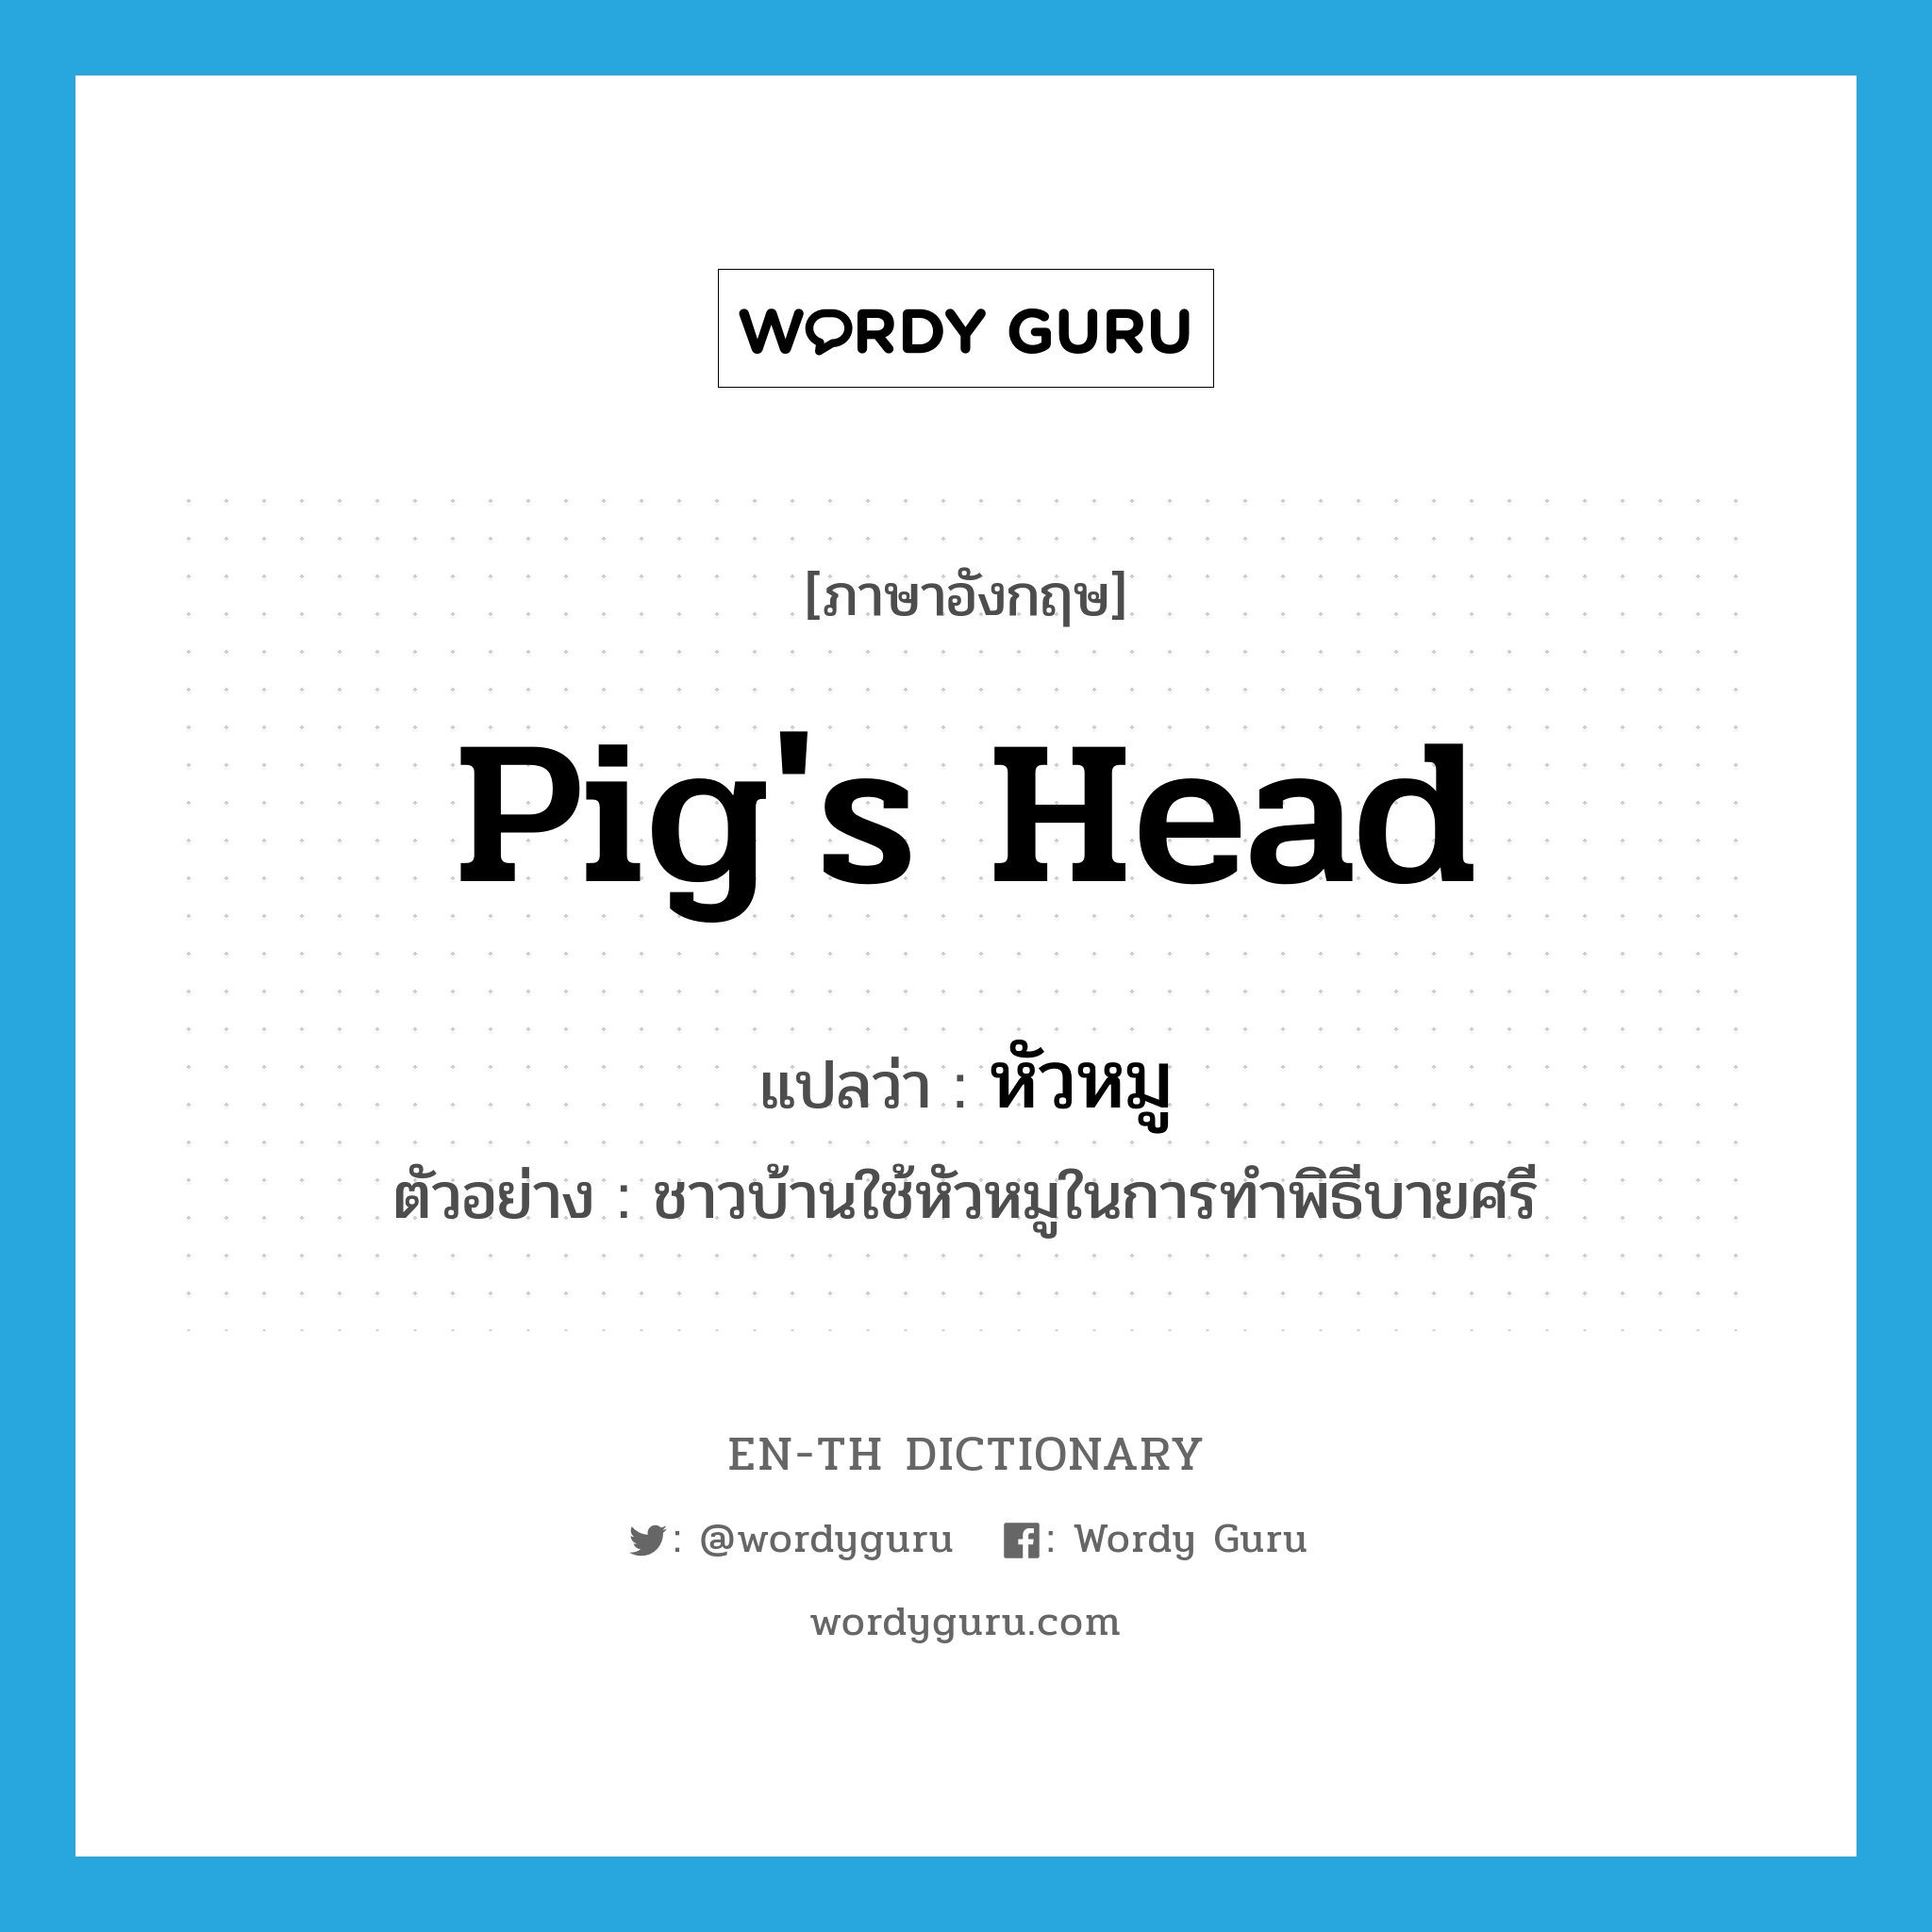 หัวหมู ภาษาอังกฤษ?, คำศัพท์ภาษาอังกฤษ หัวหมู แปลว่า pig's head ประเภท N ตัวอย่าง ชาวบ้านใช้หัวหมูในการทำพิธีบายศรี หมวด N